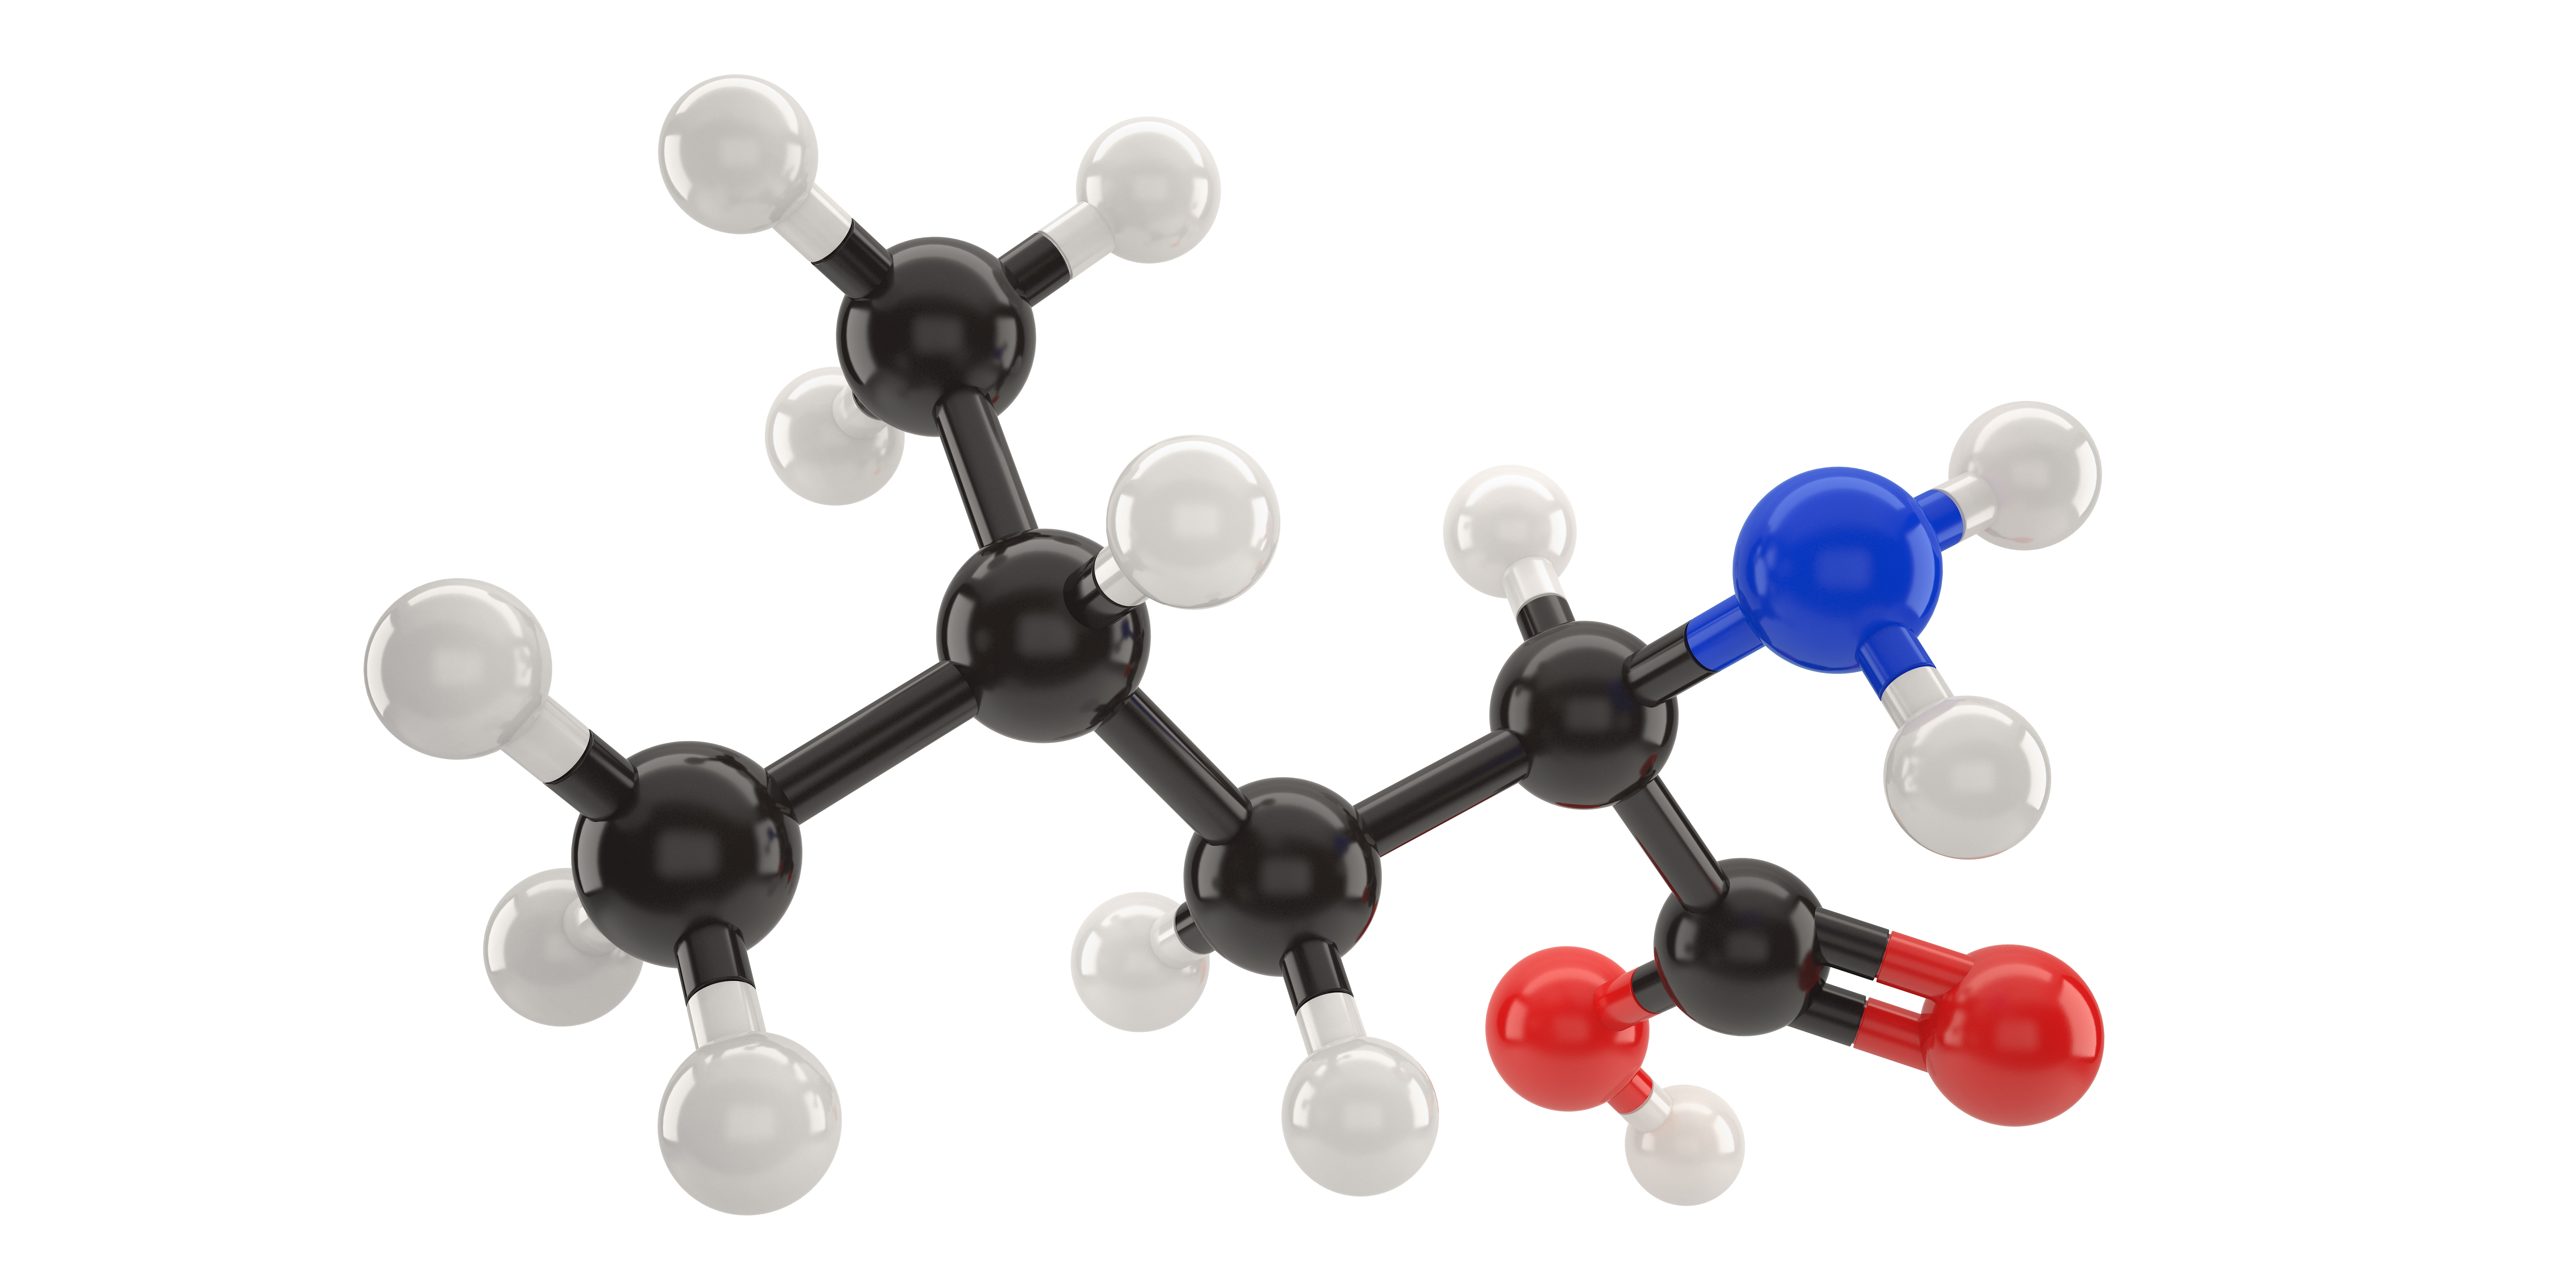 化学药品注射剂生产所用的塑料组件系统<font color="red">相容性</font>研究技术指南（试行）